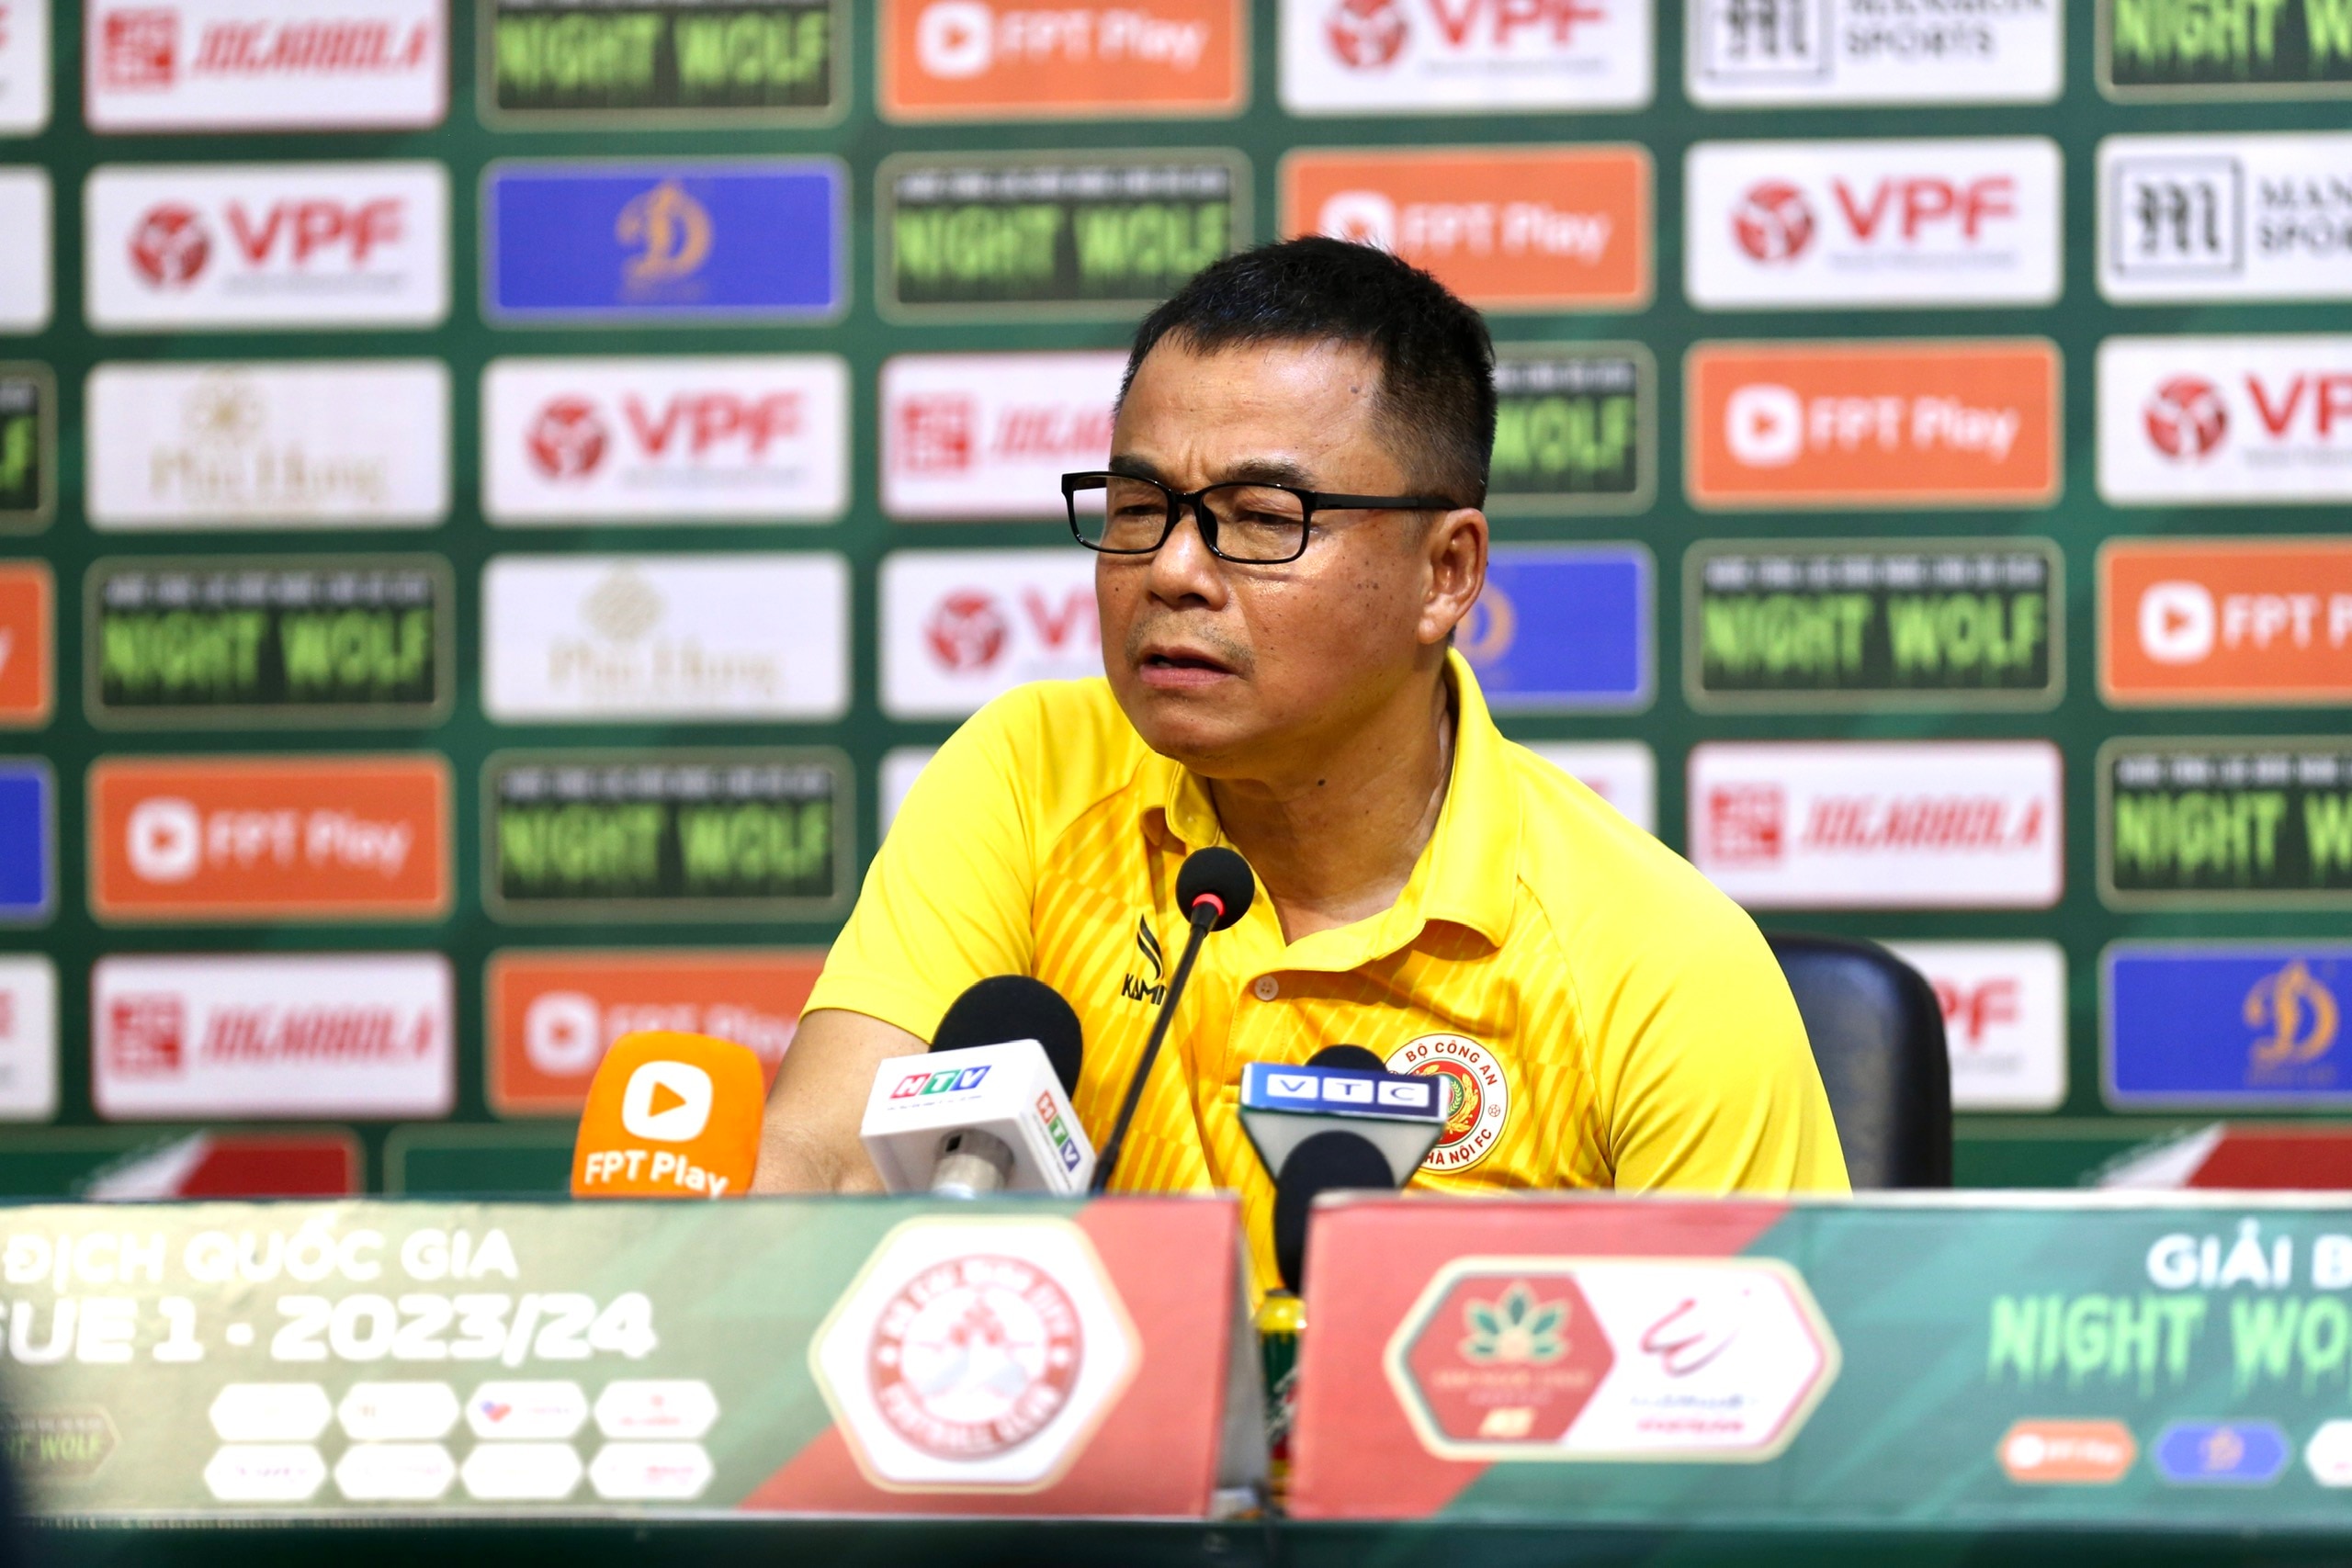 HLV Trần Tiến Đại cùng CLB Công an Hà Nội thua 2 trận liên tiếp, kể từ sau khi HLV Kiatisak bất ngờ từ chức